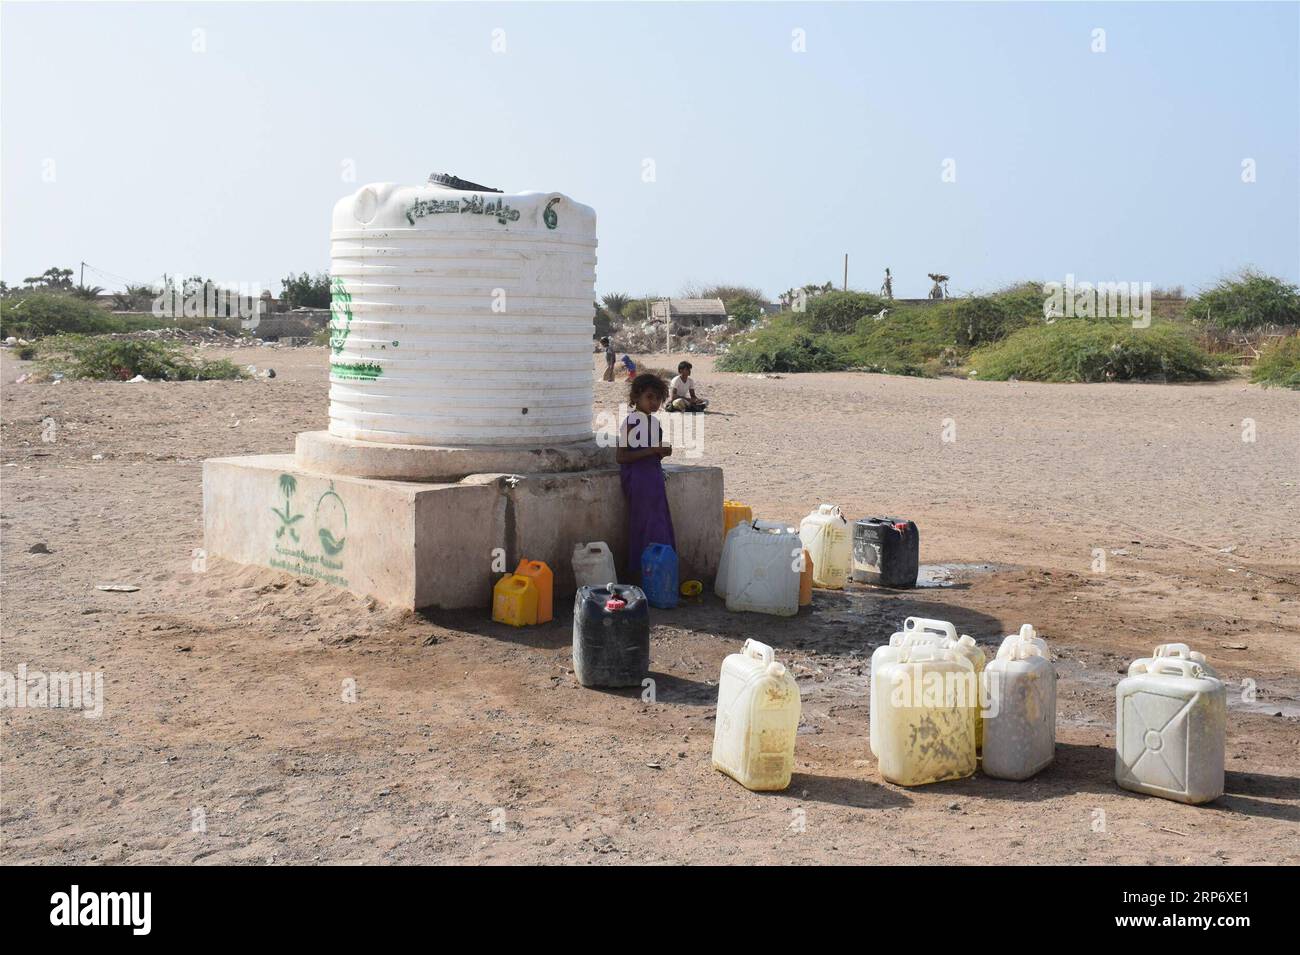 (190121) -- HODEIDAH (JEMEN), 21. Januar 2019 () -- Ein Kind steht am 21. Januar 2019 in einem Vernichtungslager in Hodeidah (Jemen) neben einem Trinkwassertank. Die beiden kriegführenden Seiten des Jemen hatten im vergangenen Monat unter der Schirmherrschaft der Vereinten Nationen eine Waffenstillstandsvereinbarung getroffen, doch konnte das Leid der Binnenvertriebenen in der Hafenstadt Hodeidah am Roten Meer nicht verringert werden. () JEMEN-HODEIDAH-BINNENVERTRIEBENE Xinhua PUBLICATIONxNOTxINxCHN Stockfoto